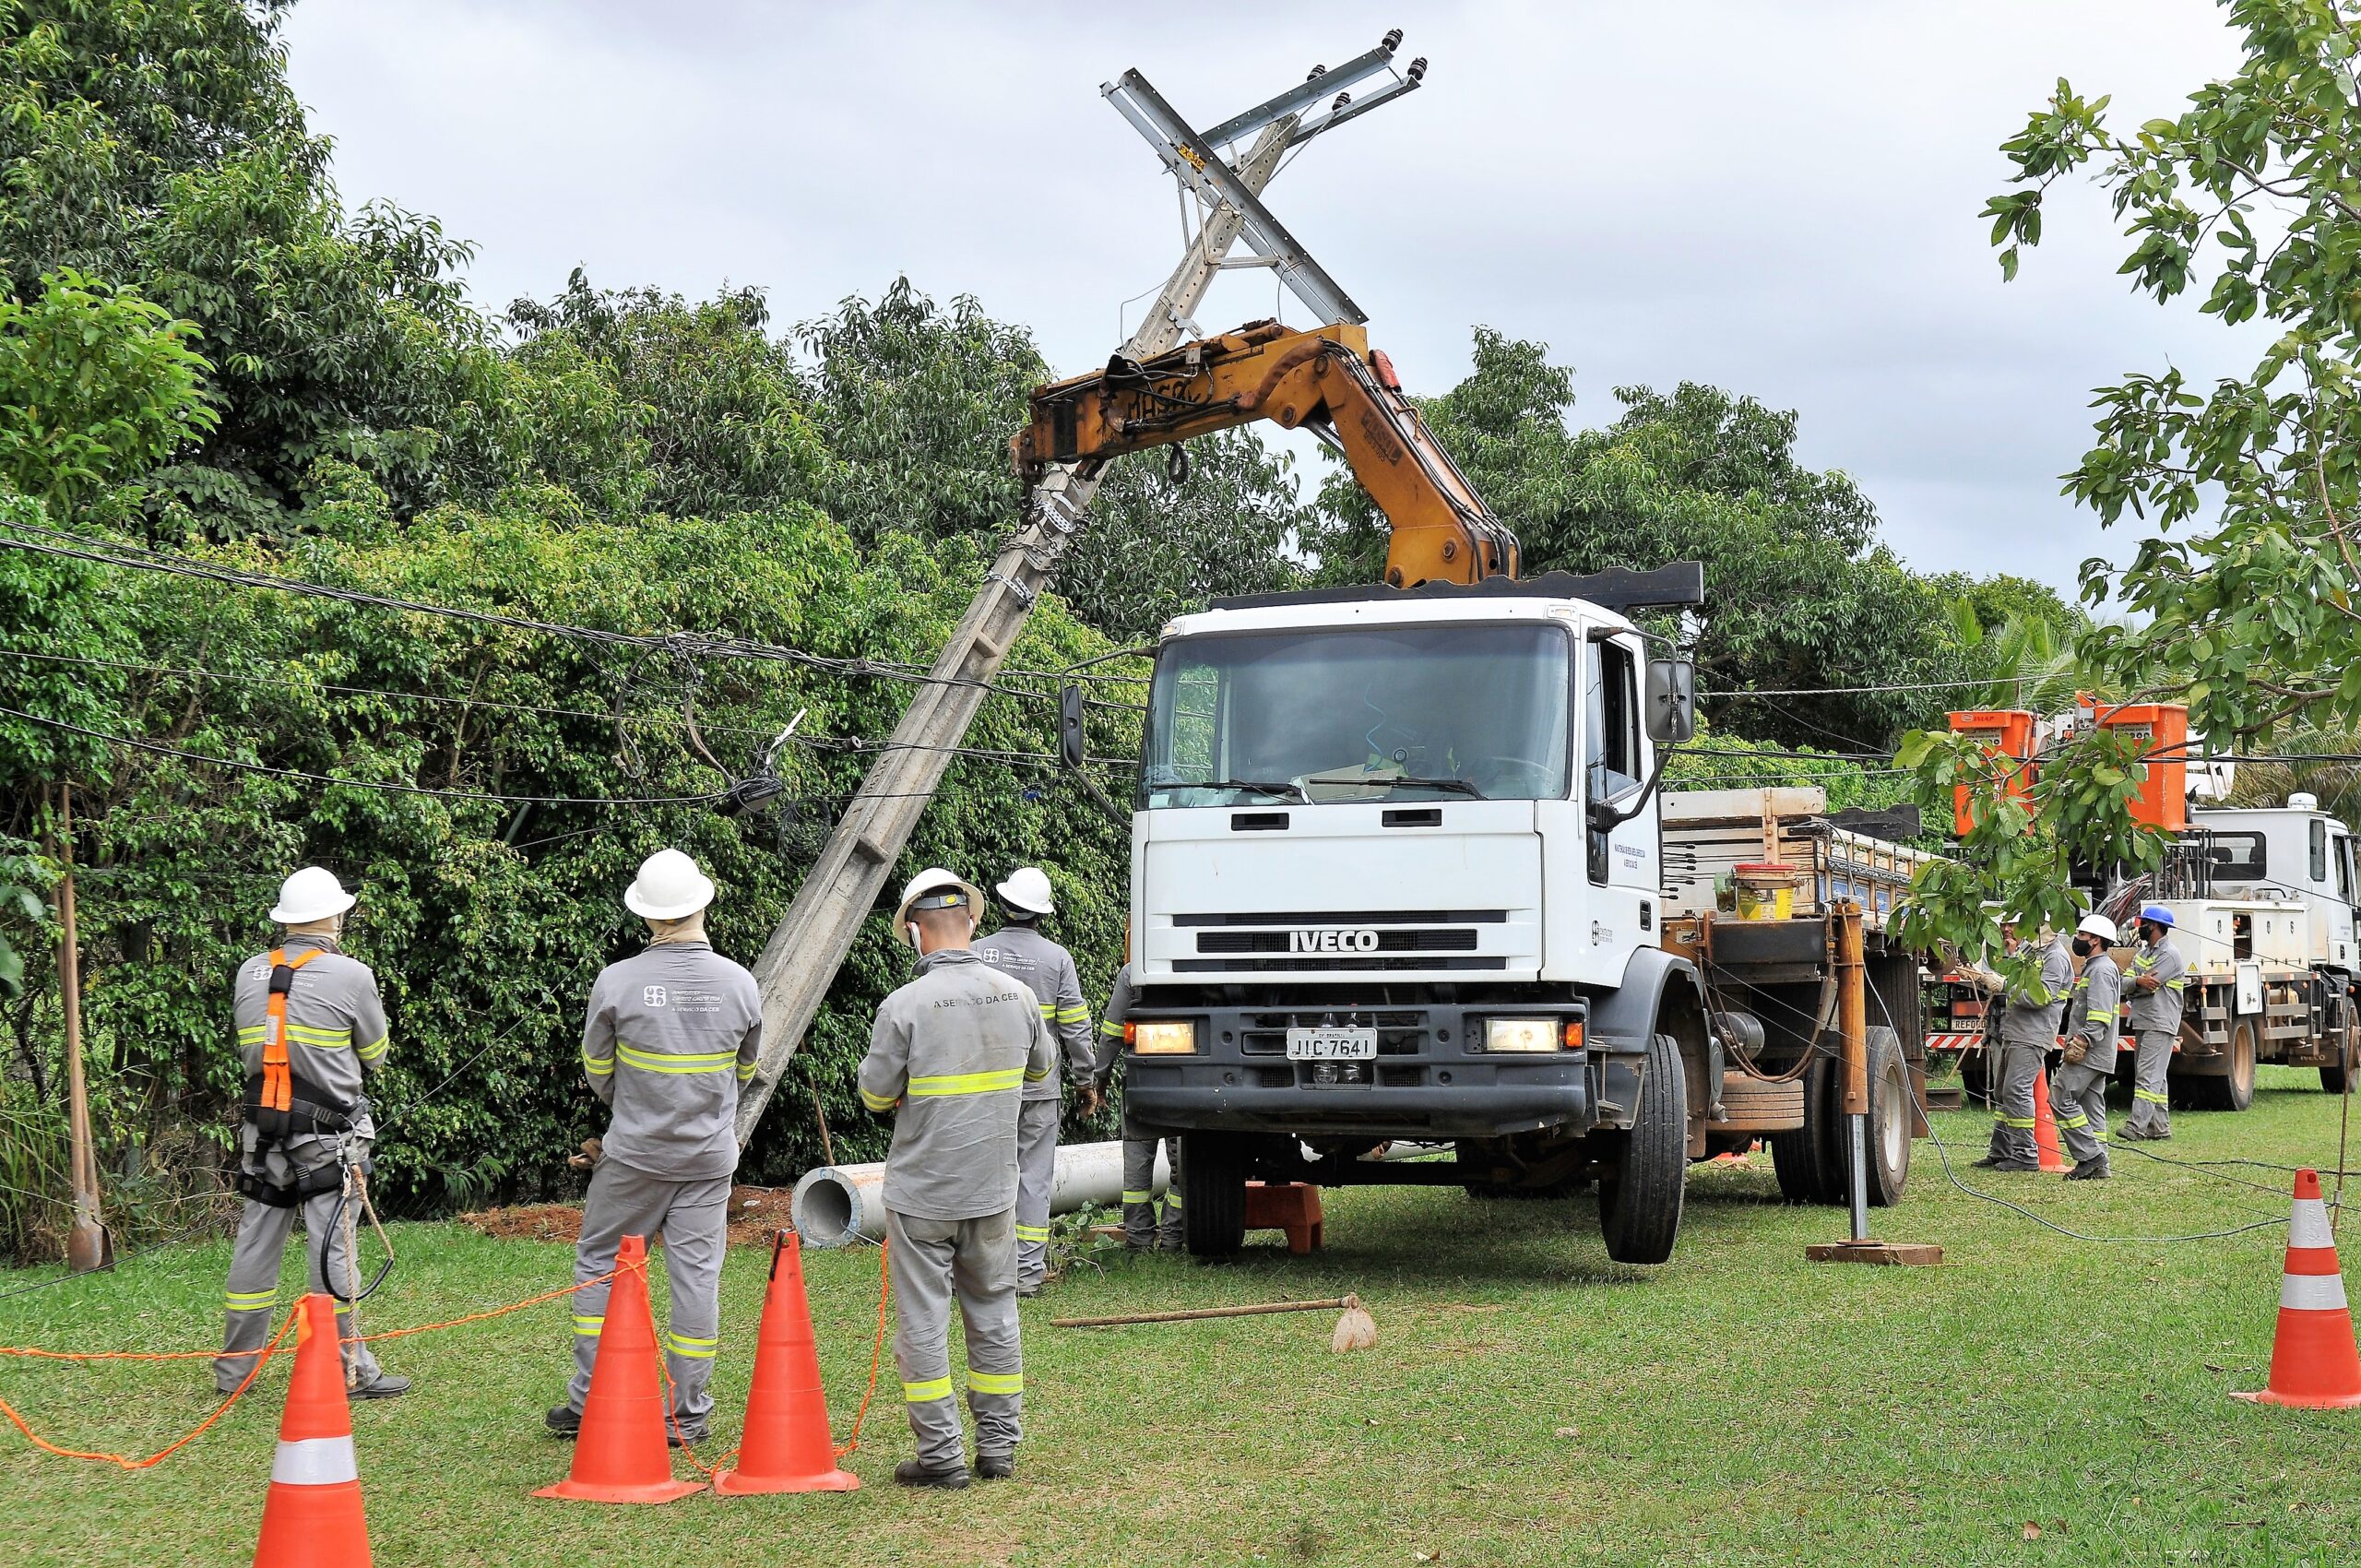 Caso os trabalhos sejam concluídos antes do previsto, a energia será religada sem aviso prévio | Foto: Arquivo/Agência Brasília